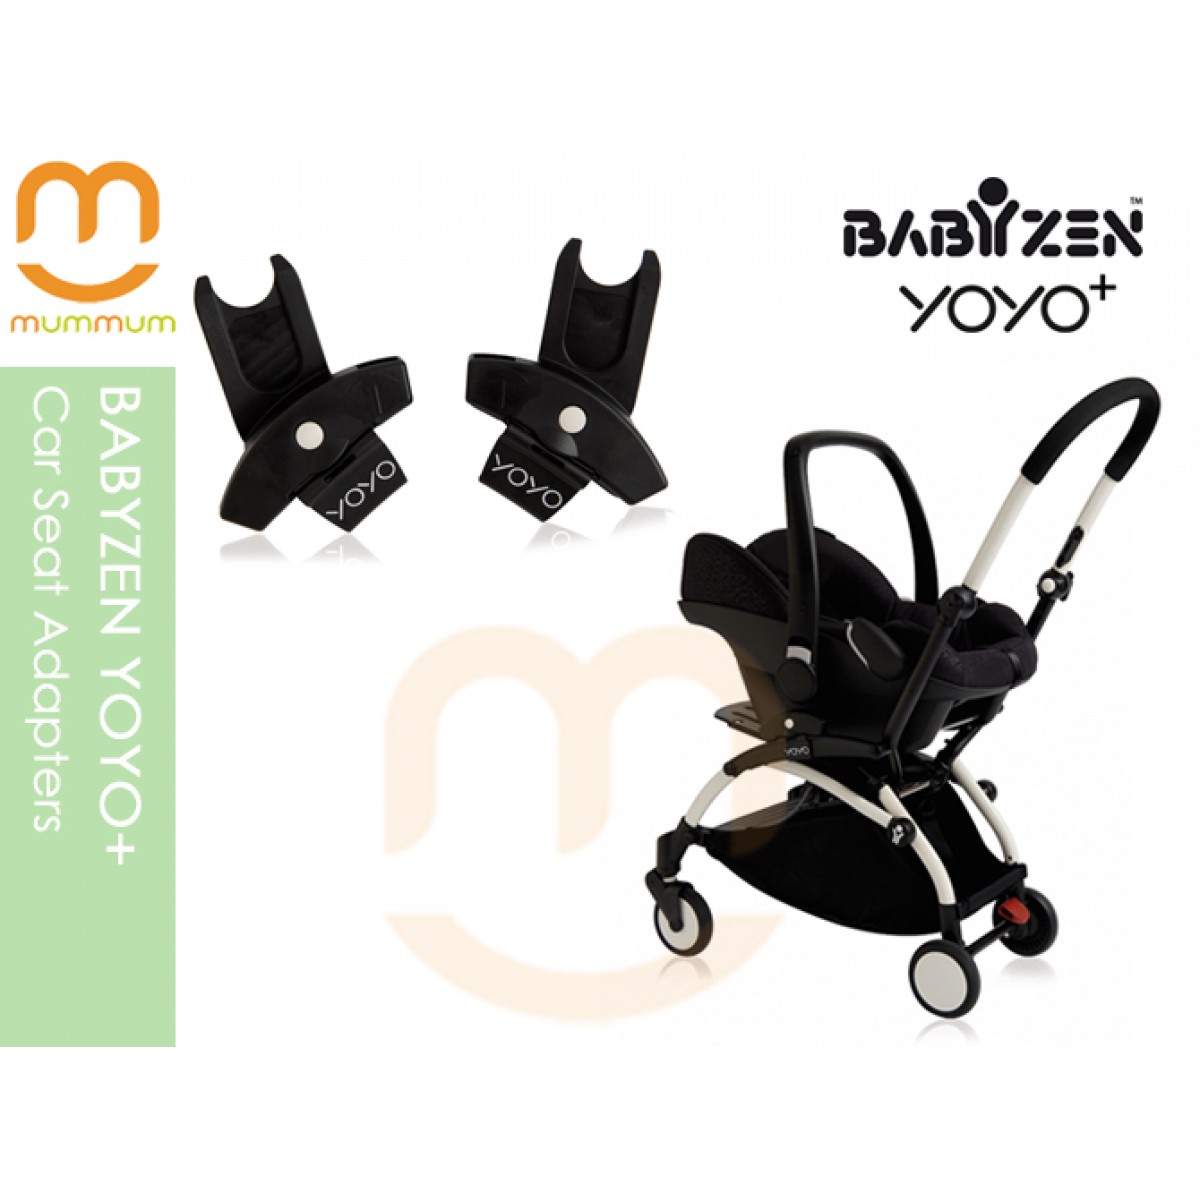 babyzen car seat adapter